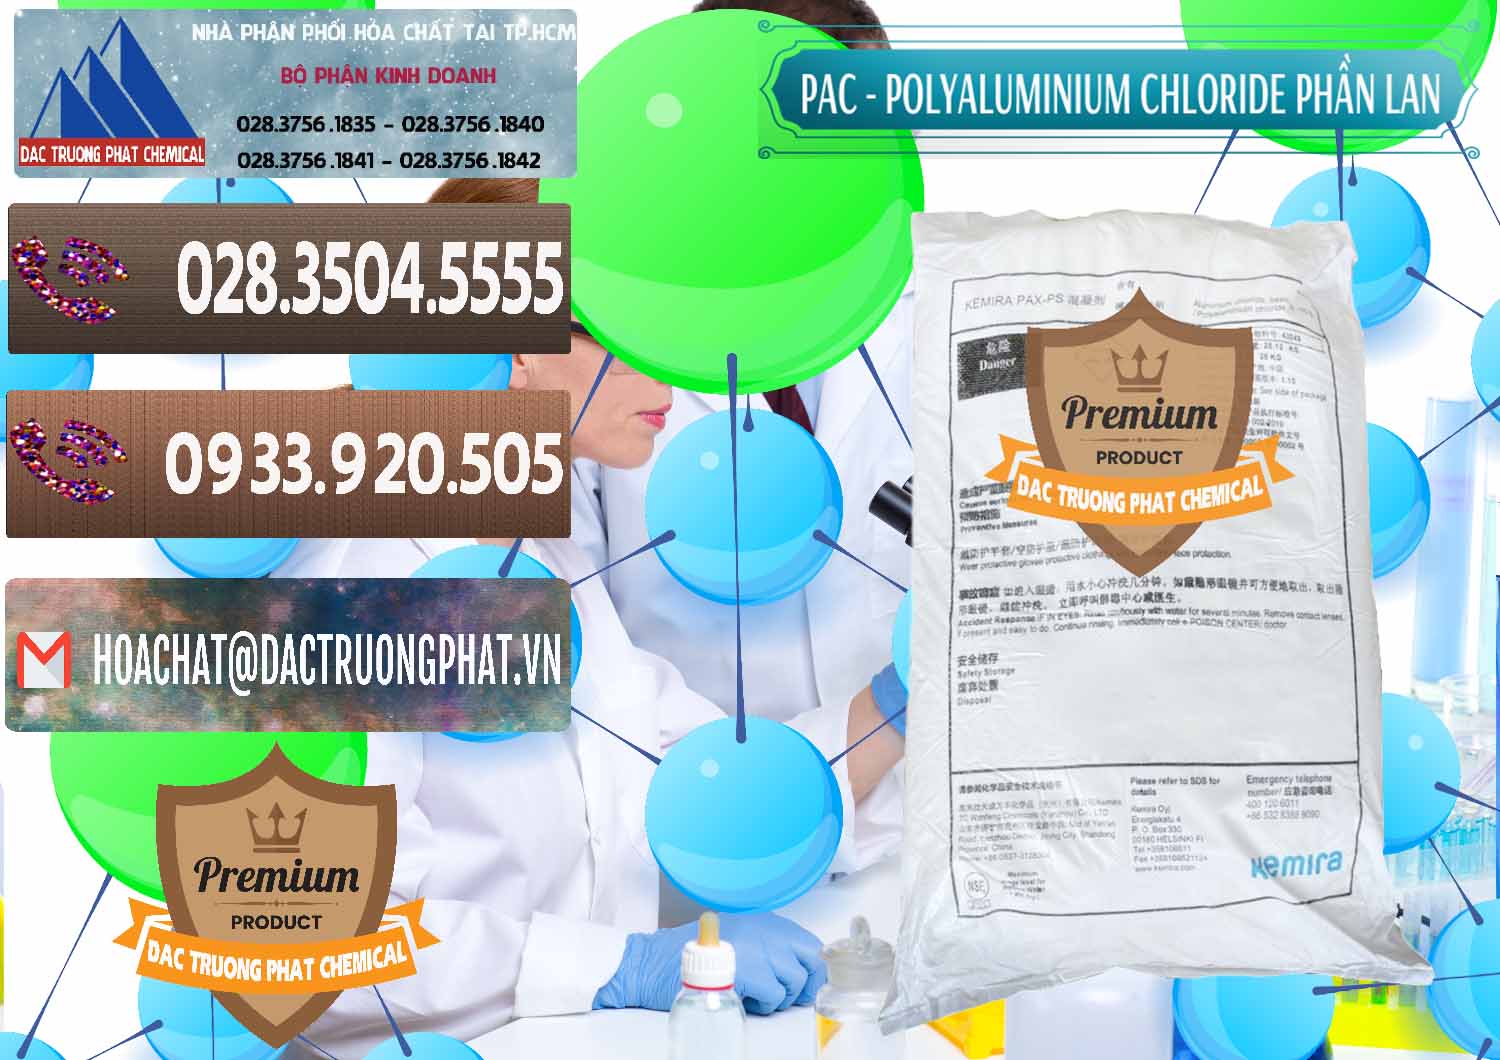 Công ty chuyên cung cấp & bán PAC - Polyaluminium Chloride Phần Lan Finland - 0383 - Cty cung ứng và phân phối hóa chất tại TP.HCM - hoachatviet.net